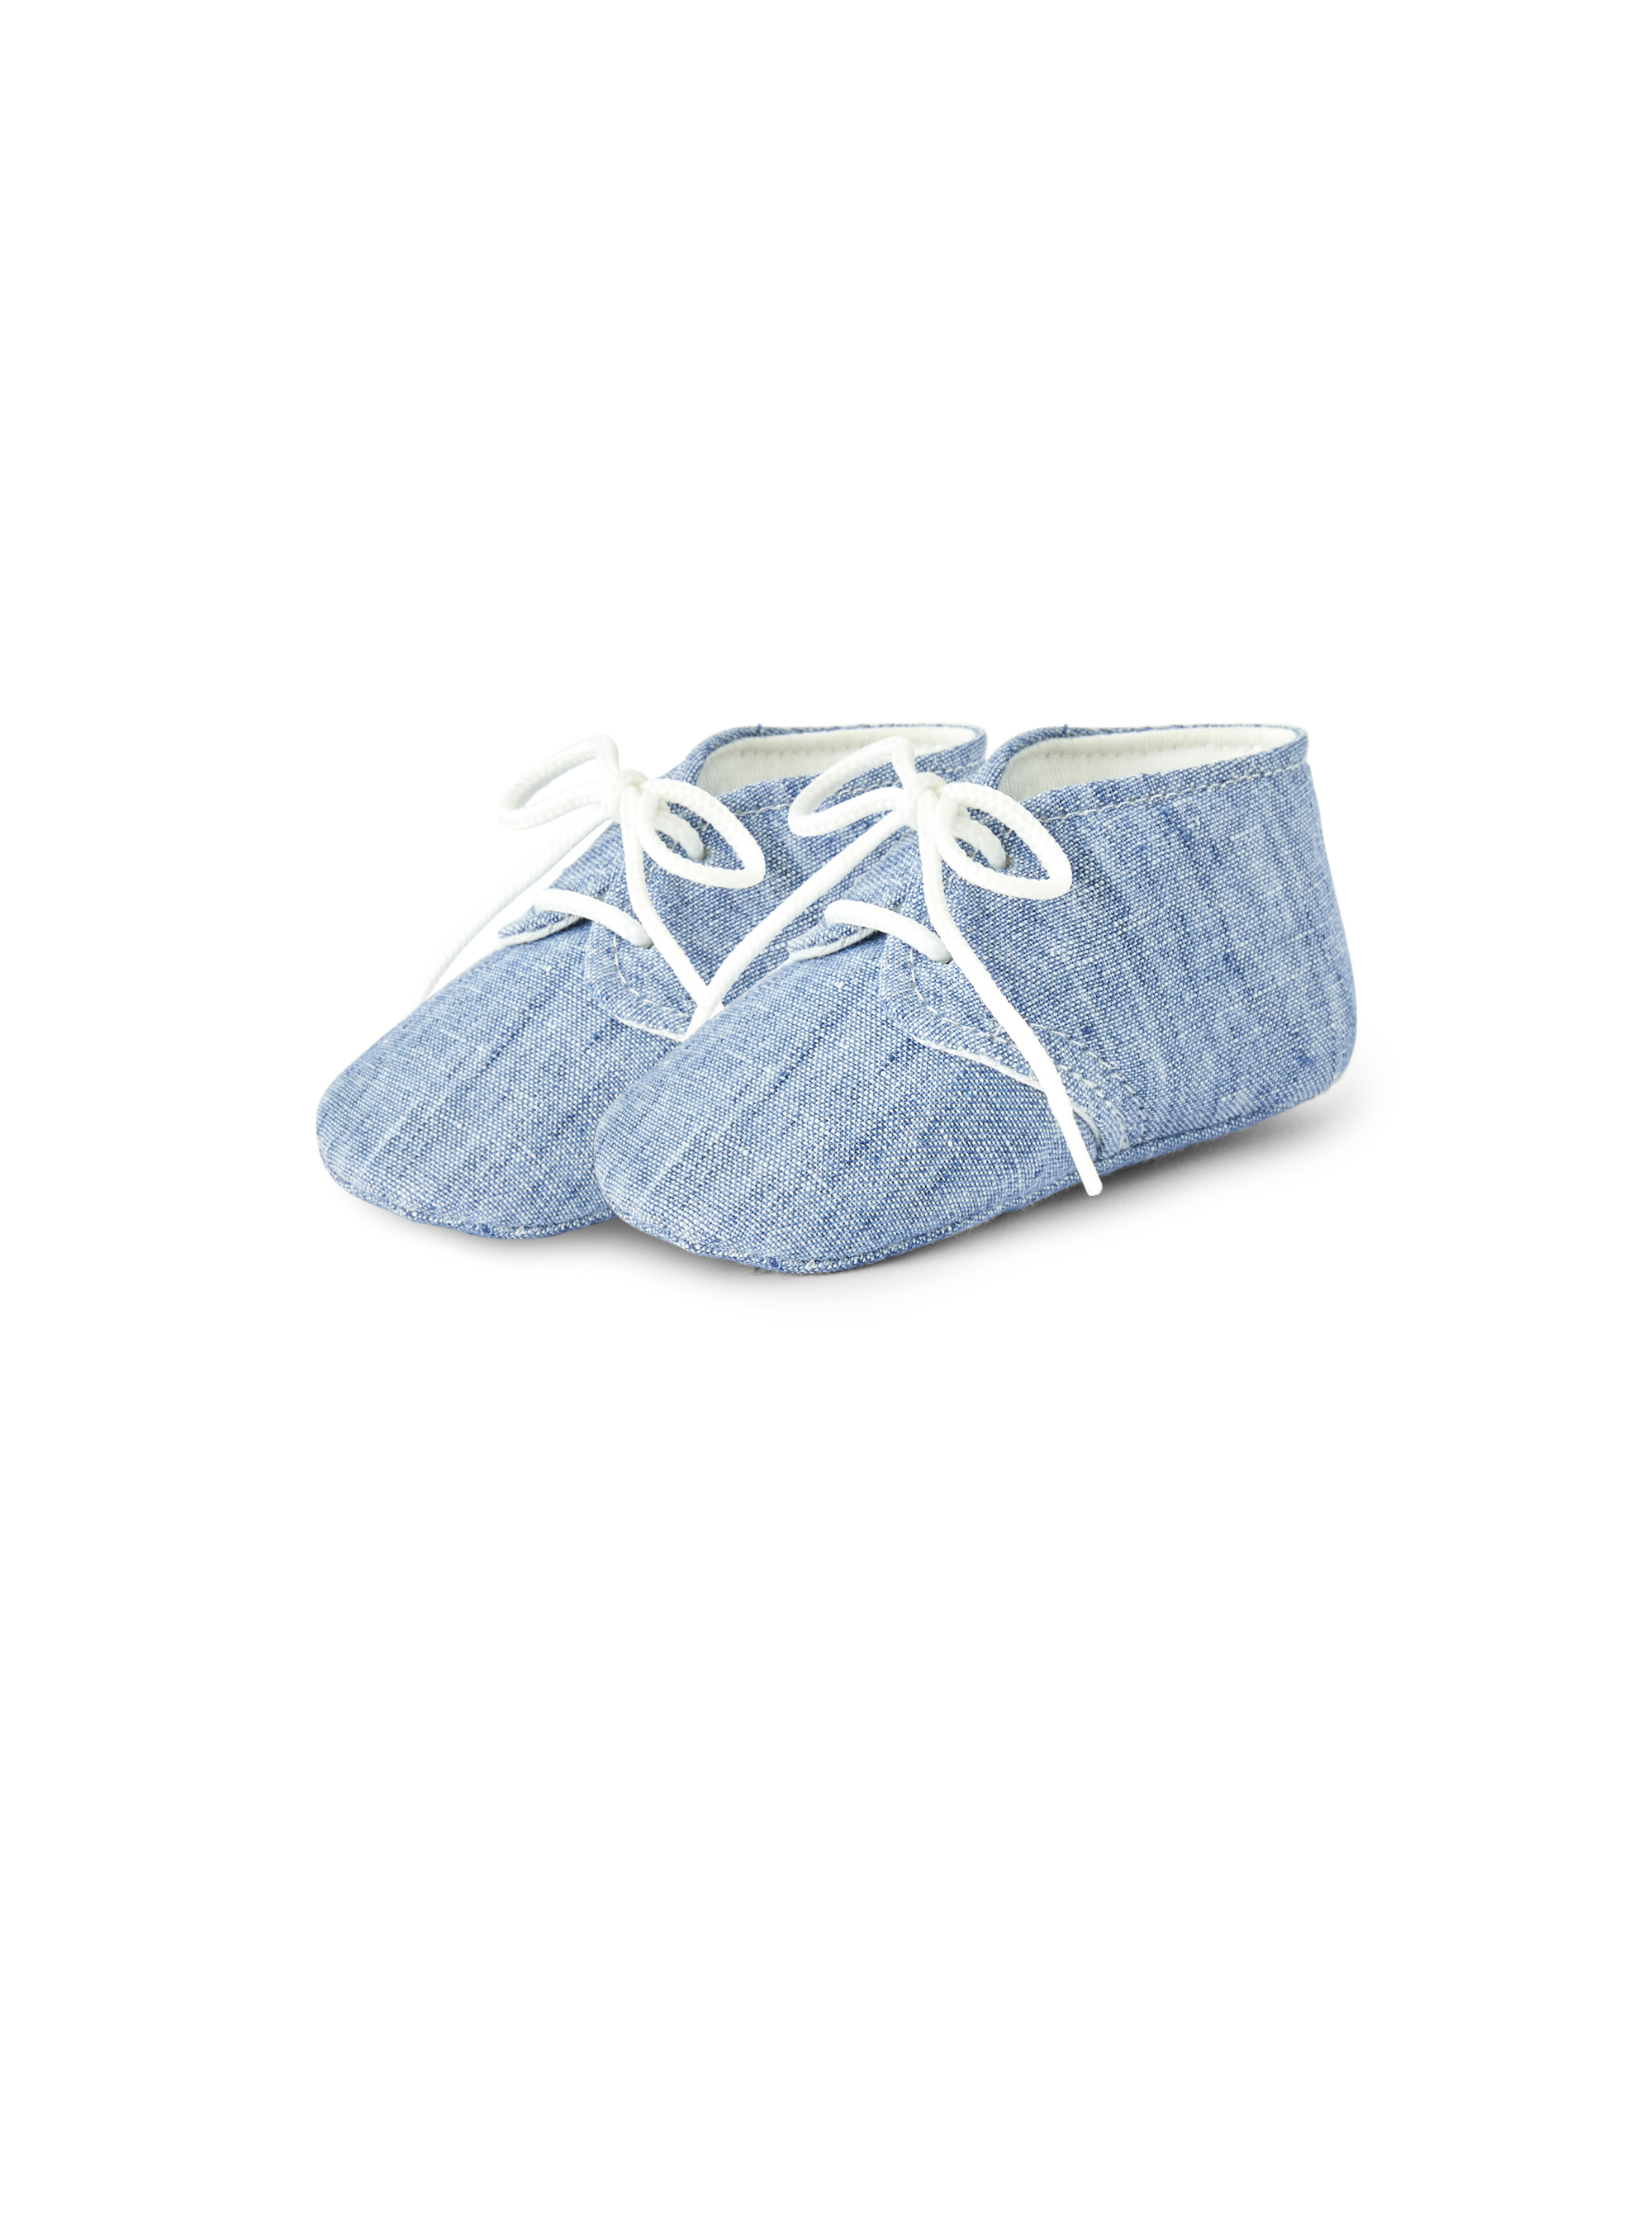 Hellblaue Slippers aus Leinen - Schuhe - Il Gufo